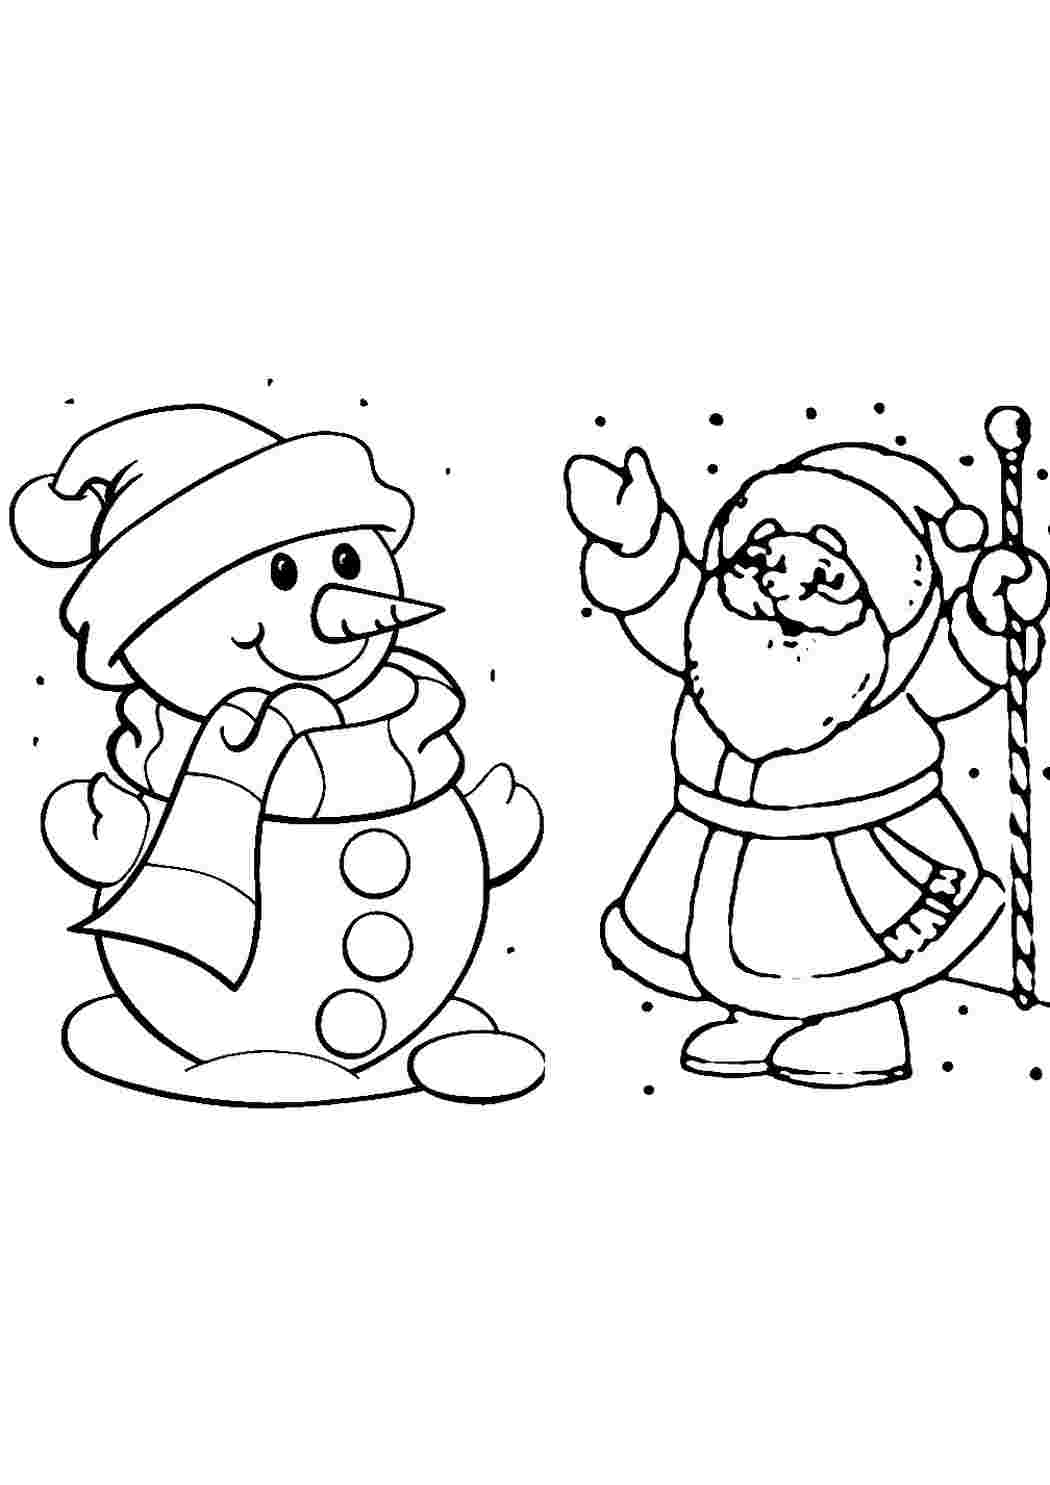 Раскраски Деда Мороза и Снегурочки - Распечатать бесплатно